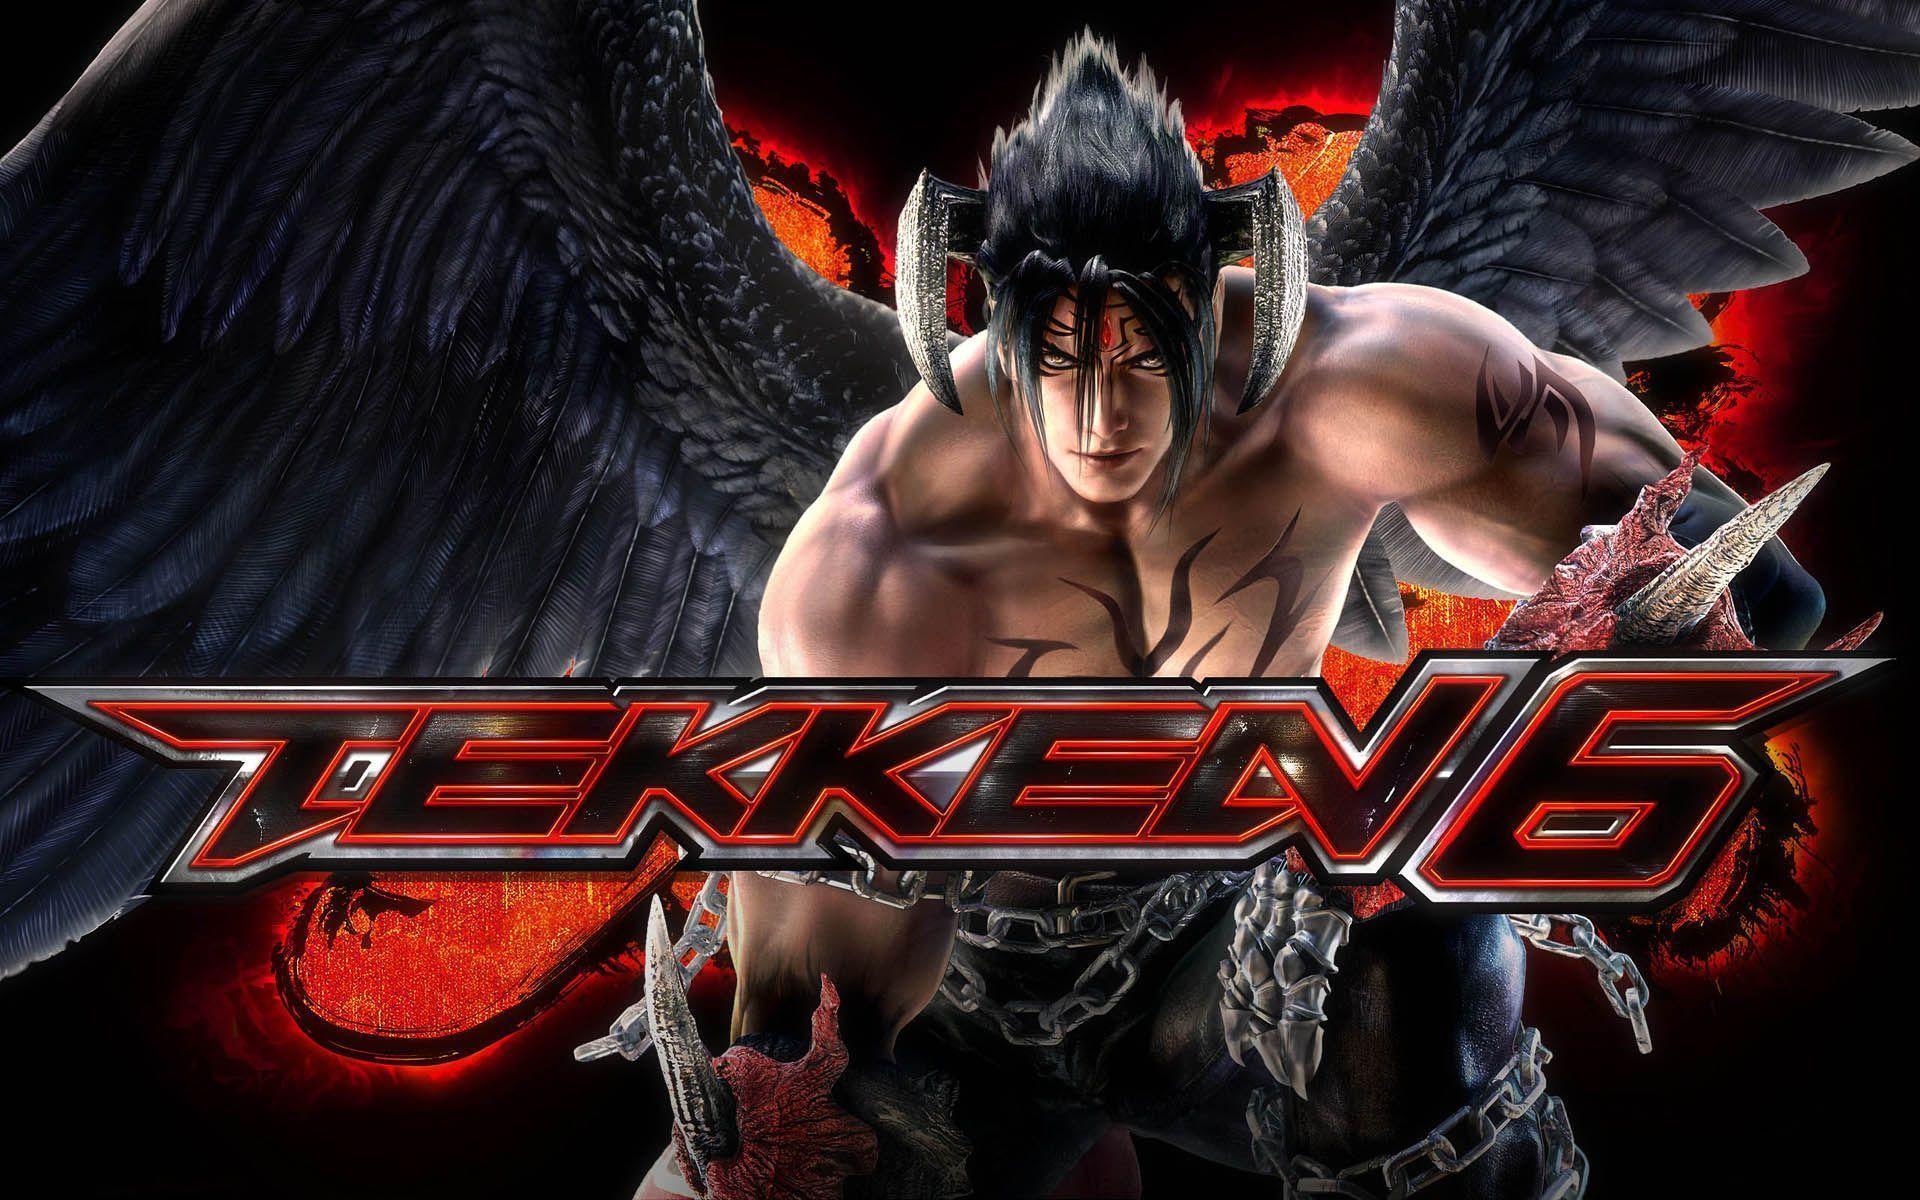 Devil Jin Tekken 6 Wallpaper